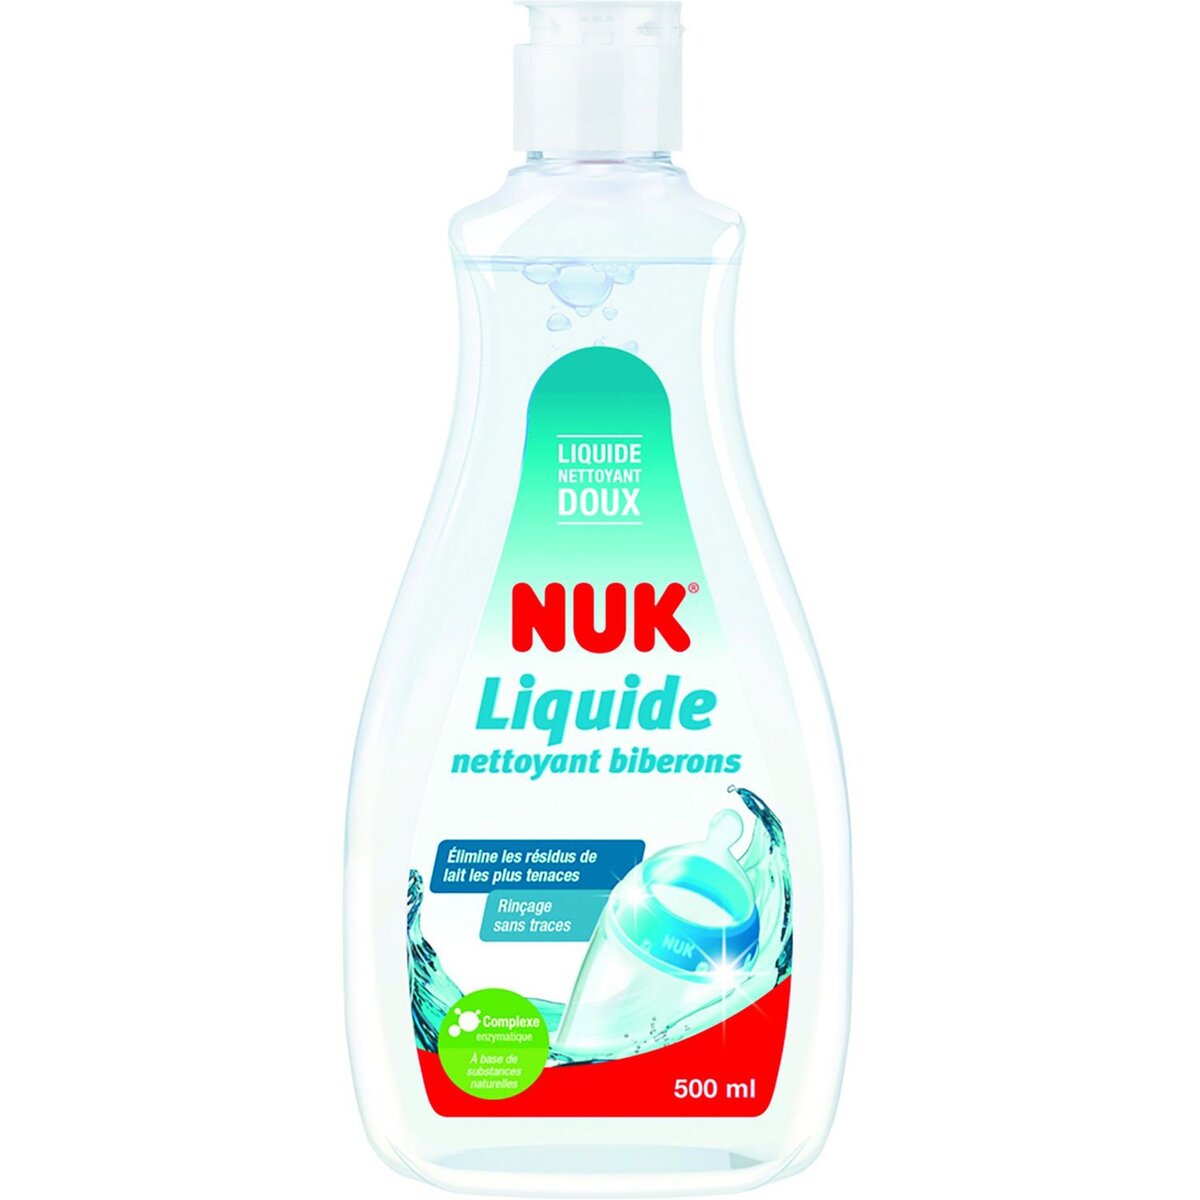 NUK Liquide vaisselle biberons et tétines - 500 ml